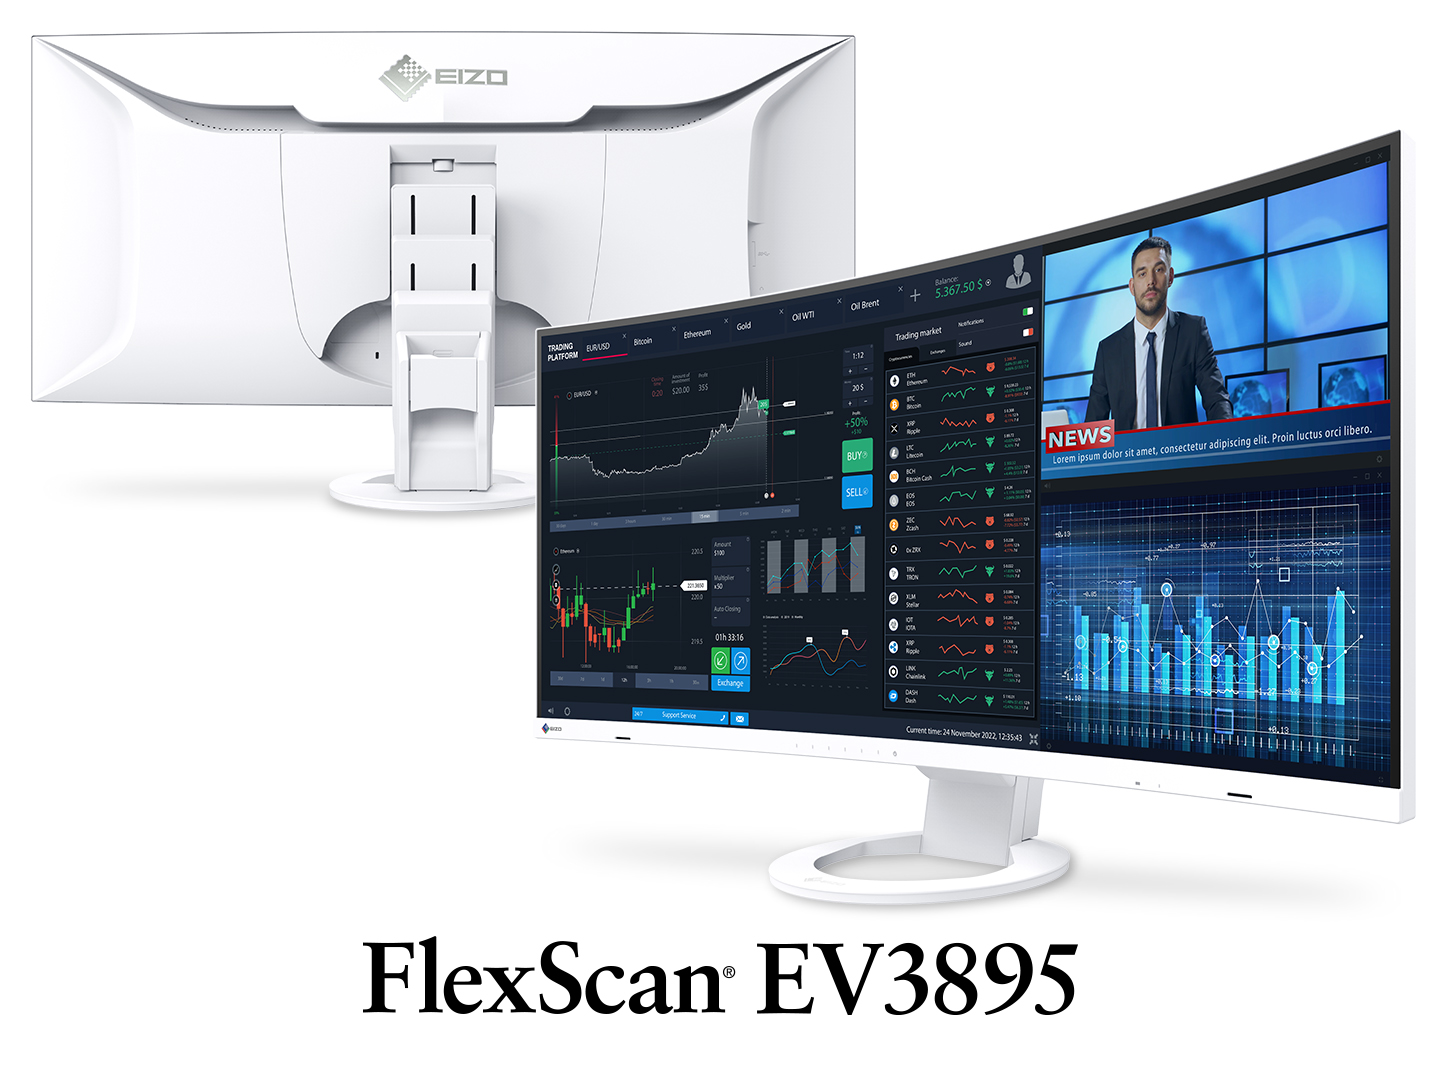 FlexScan EV3895